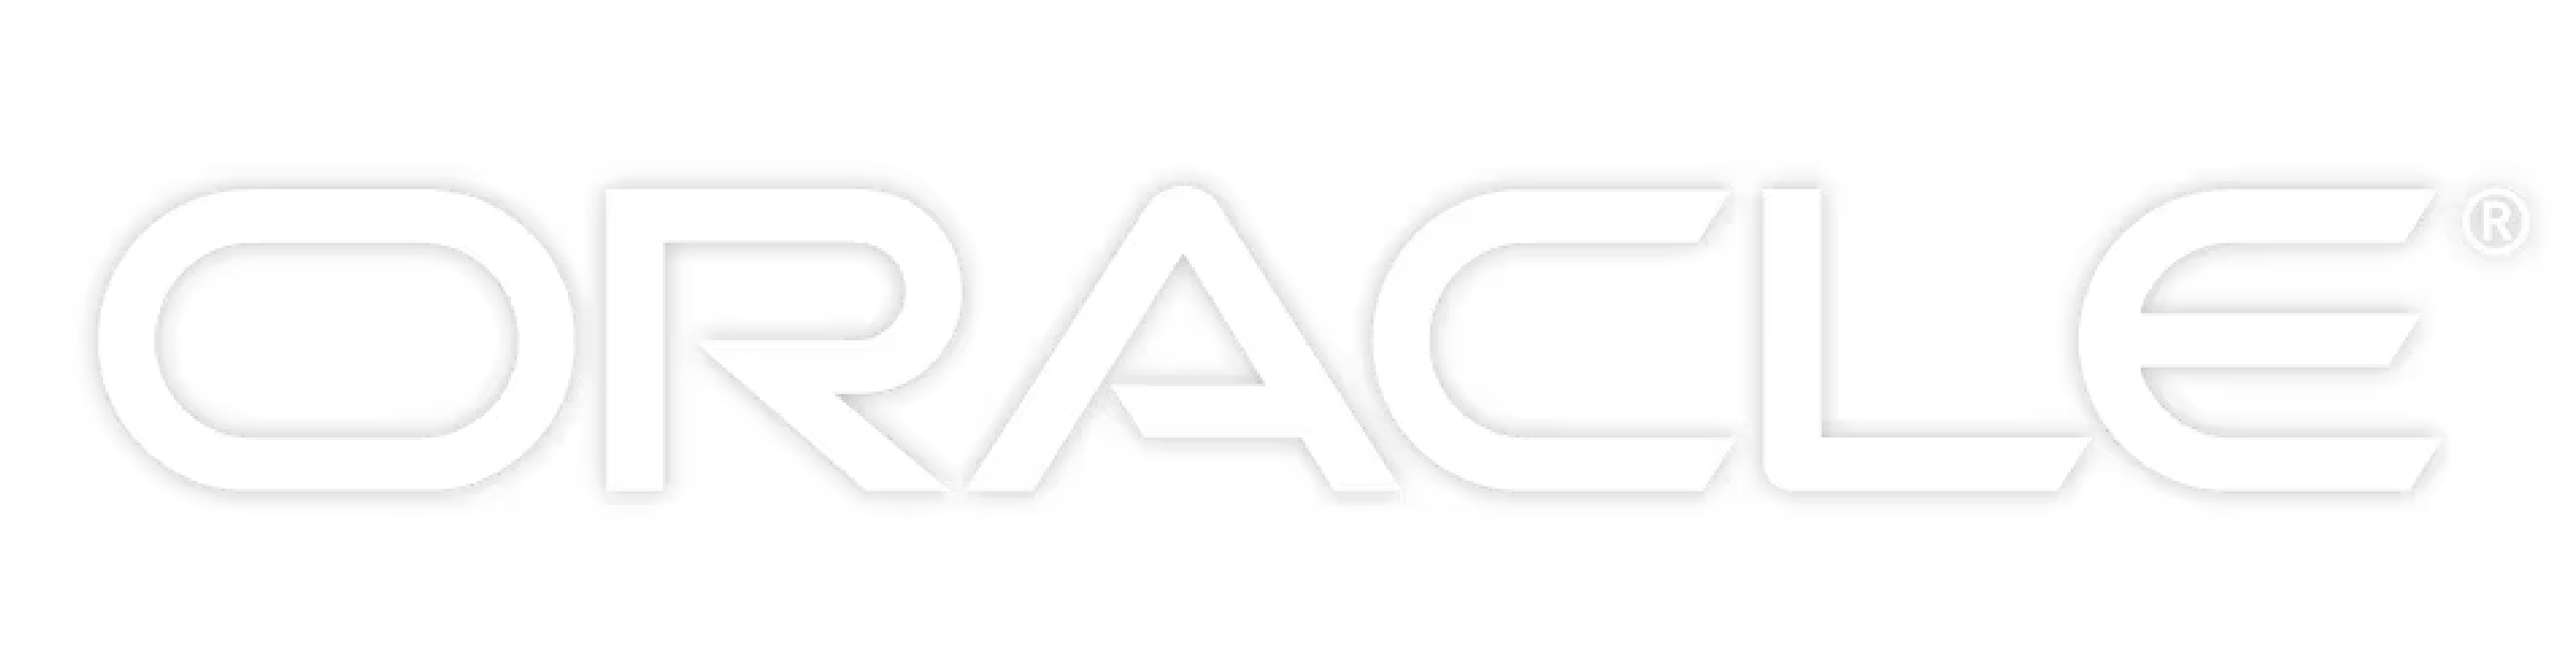 Oracle-white-logo-1260x709 (1)-2